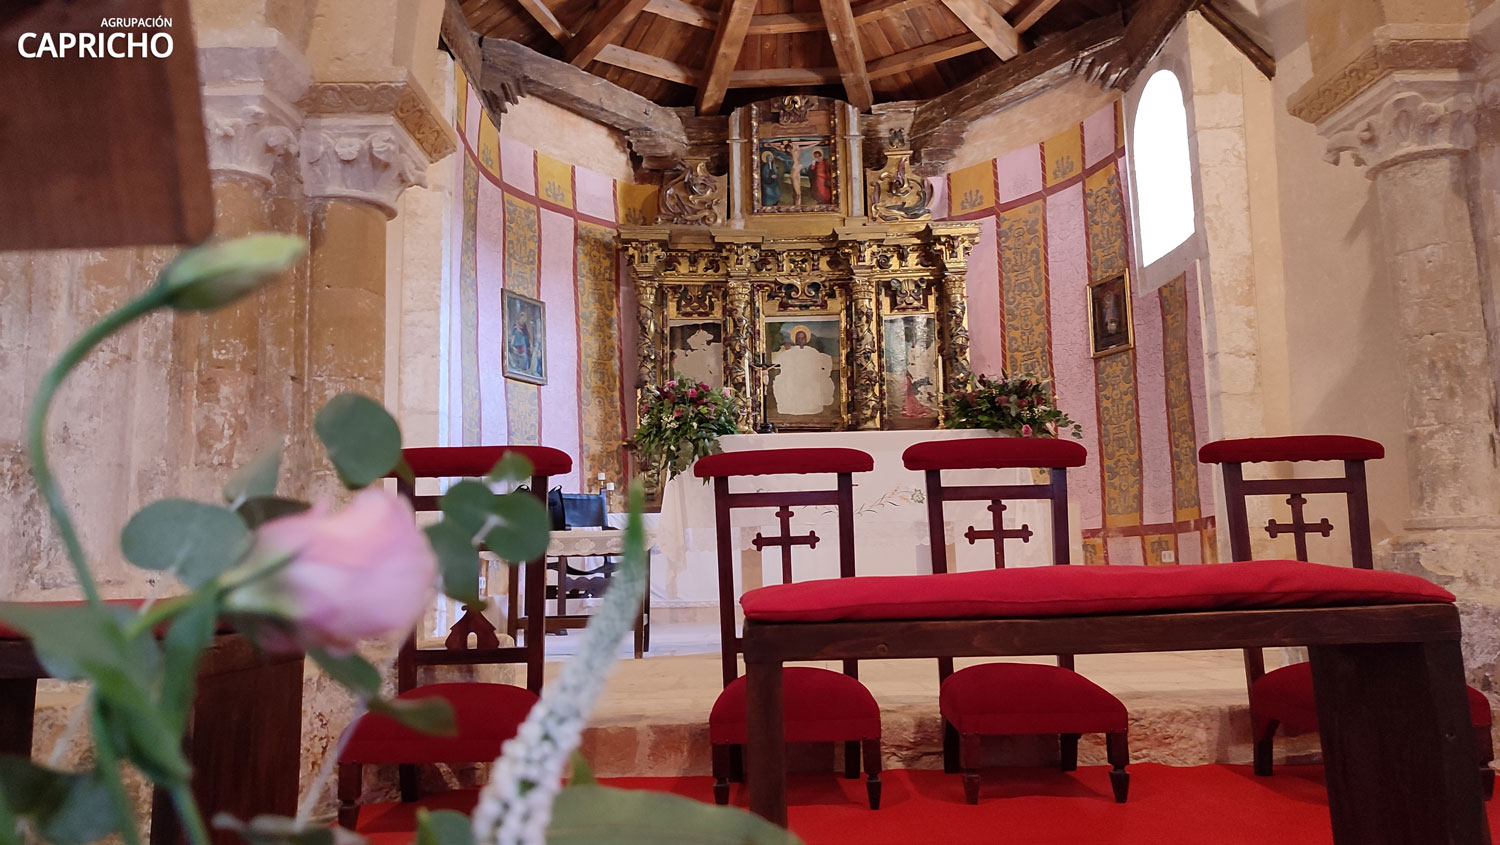 Soto de Sepúlveda - Iglesia bodas - Música para bodas con Agrupación Capricho 2